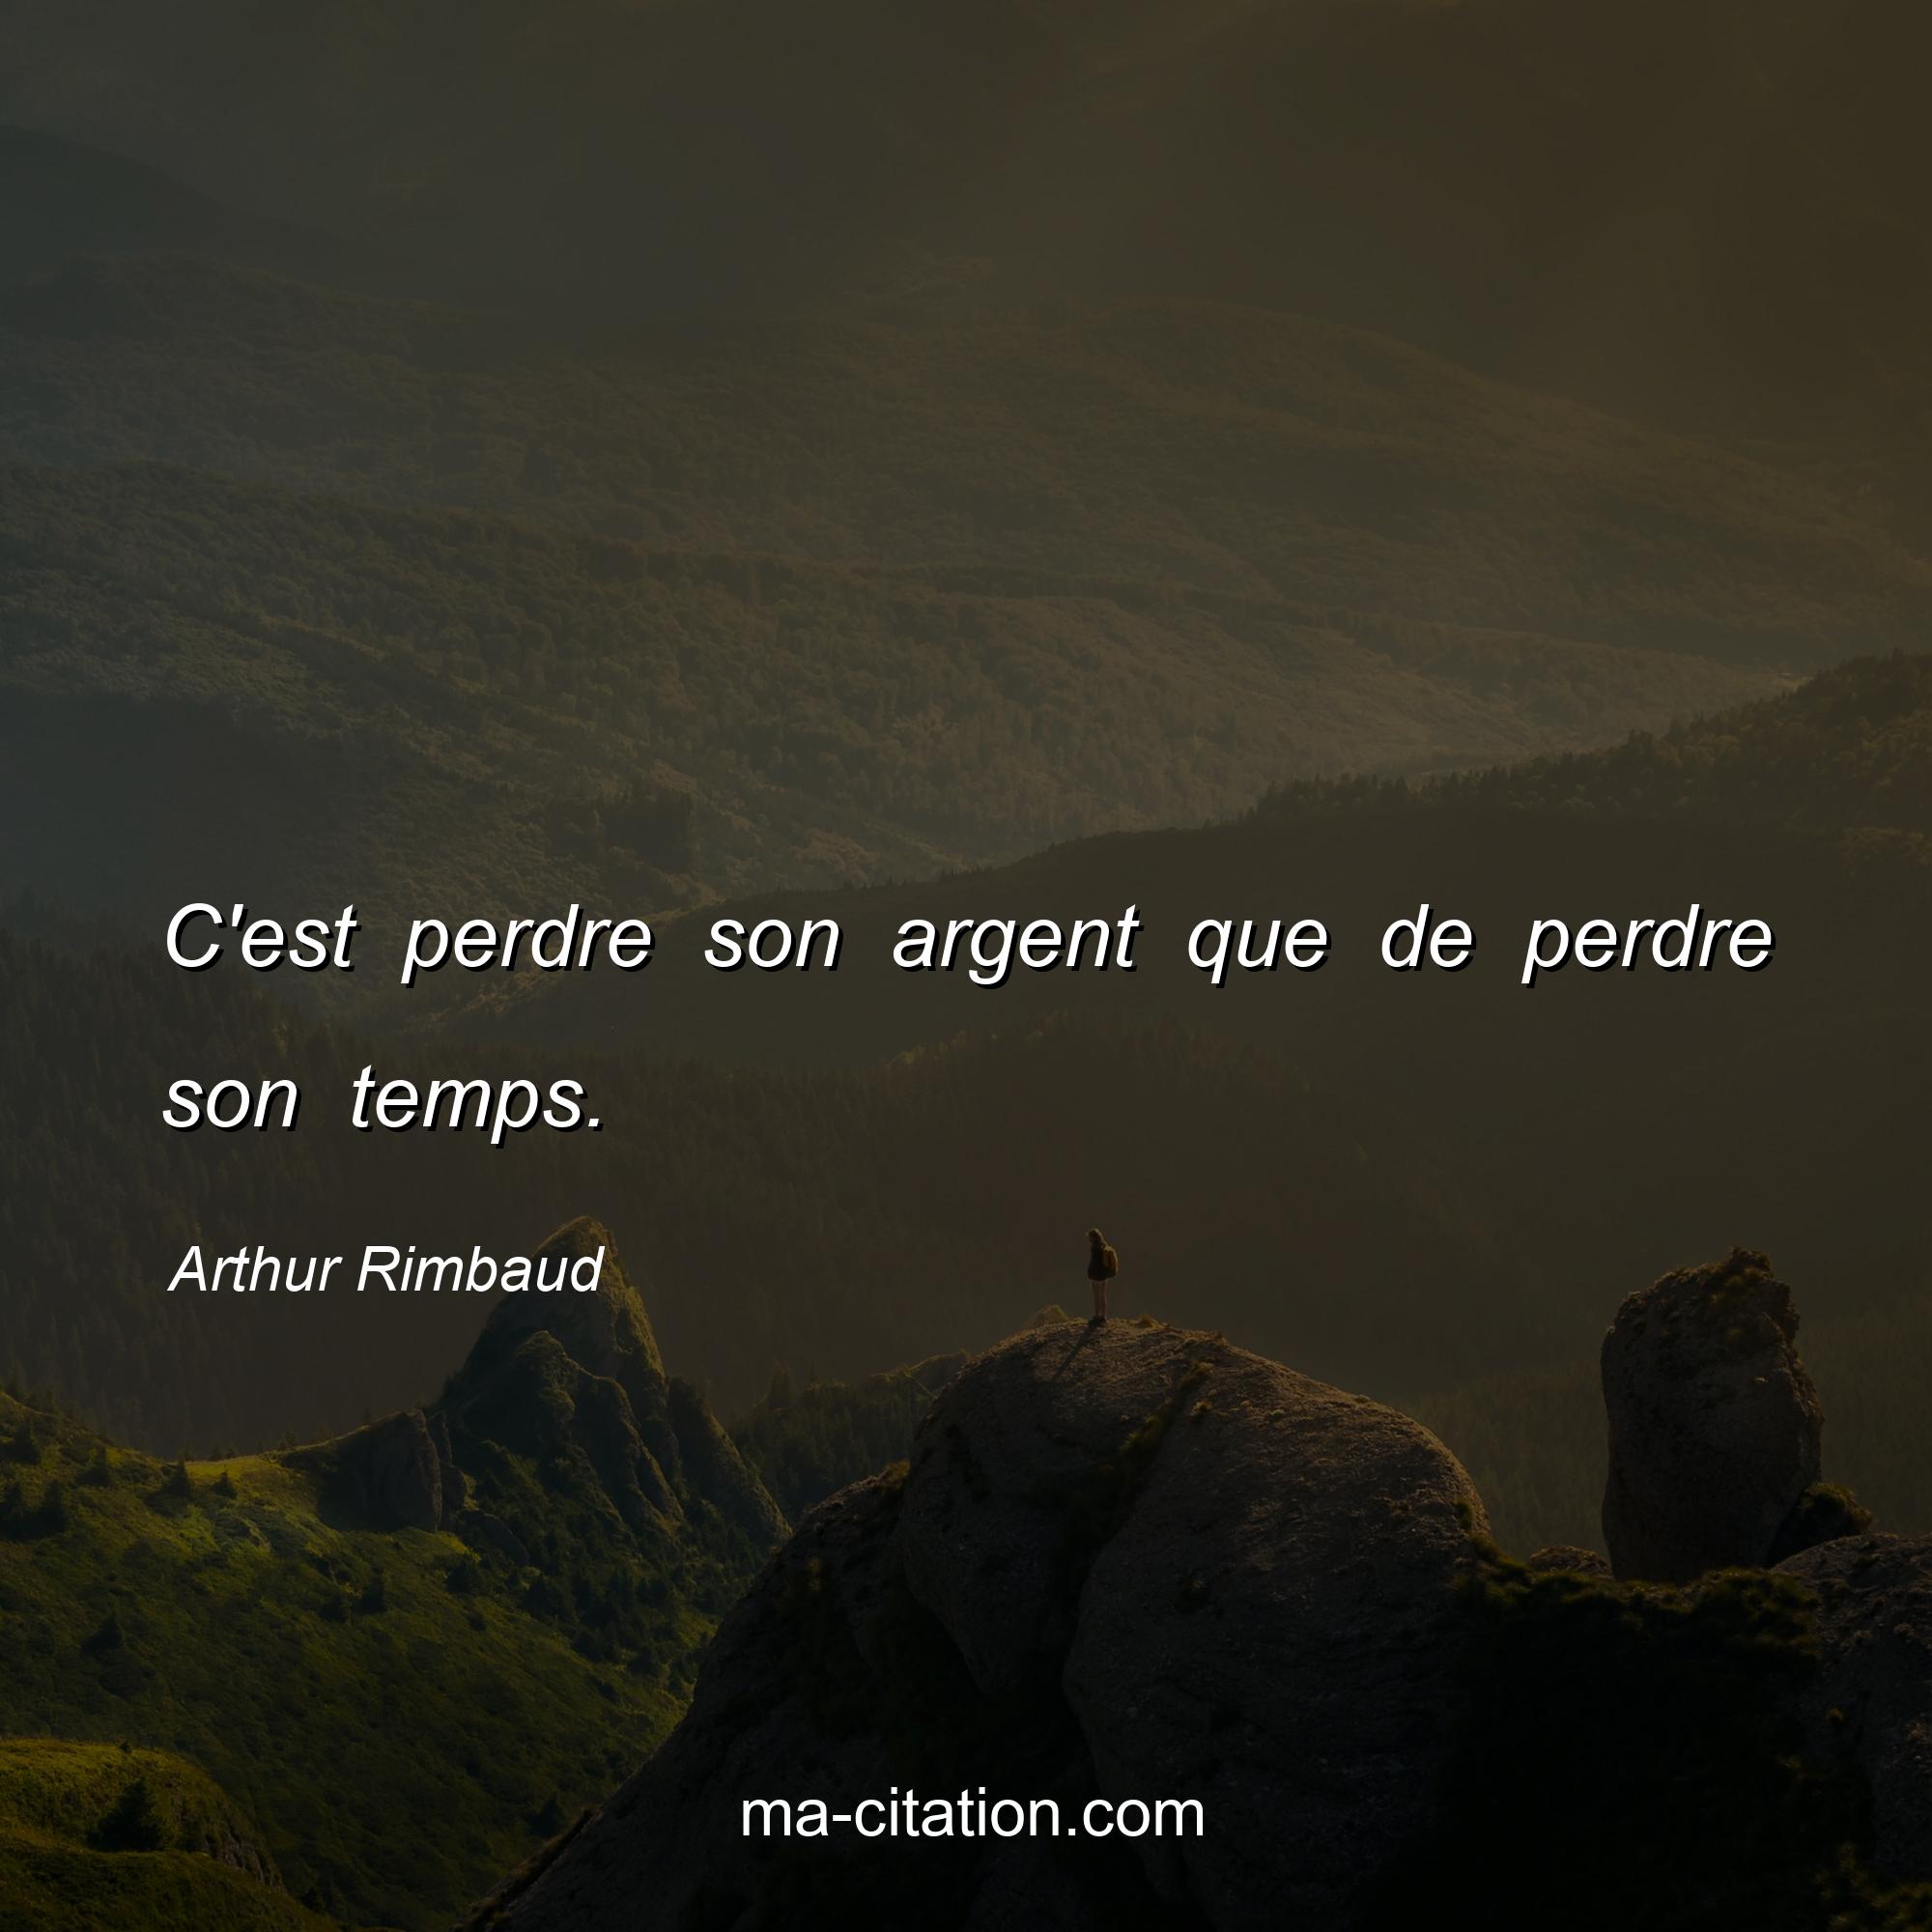 Arthur Rimbaud : C'est perdre son argent que de perdre son temps.